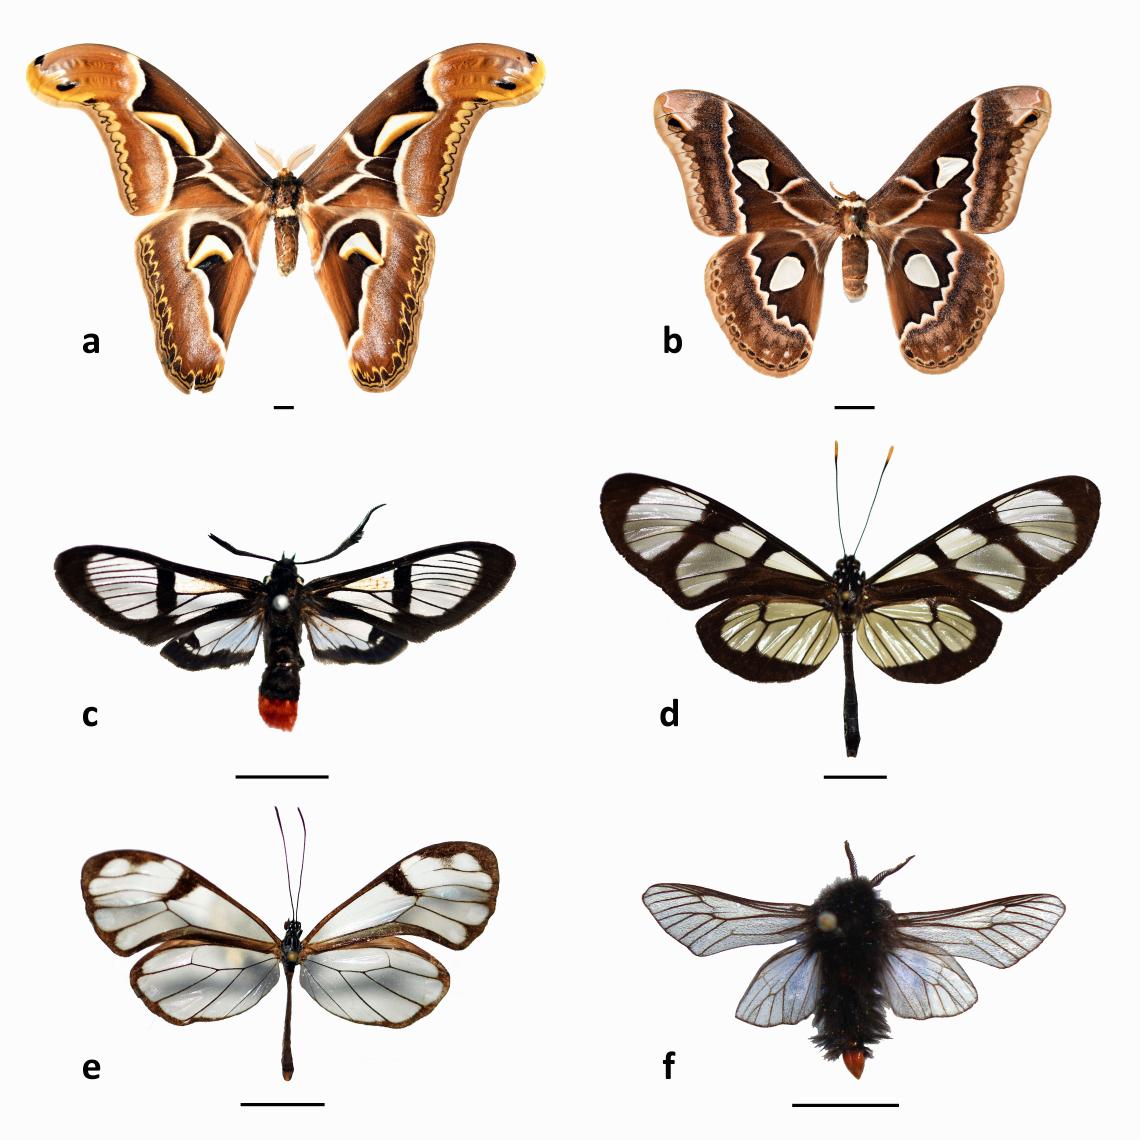 Figura 2. Algunos lepidópteros que presentan alas con transparencia. a. Attacus atlas (Linnaeus, 1758) y b. Rothschildia maurus Burmeister, 1879 (Saturniidae); c. Aethria paula Schaus, 1894 (Erebidae); d. Methona singularis (Staudinger, 1884) y e. Hypoleria lavinia (Hewitson, 1855) (Nymphalidae); f. Thanatopsyche chilensis (Philippi, 1859) (Psychidae). Escala = 10 mm (Colección de Insectos Exóticos del MNHN).